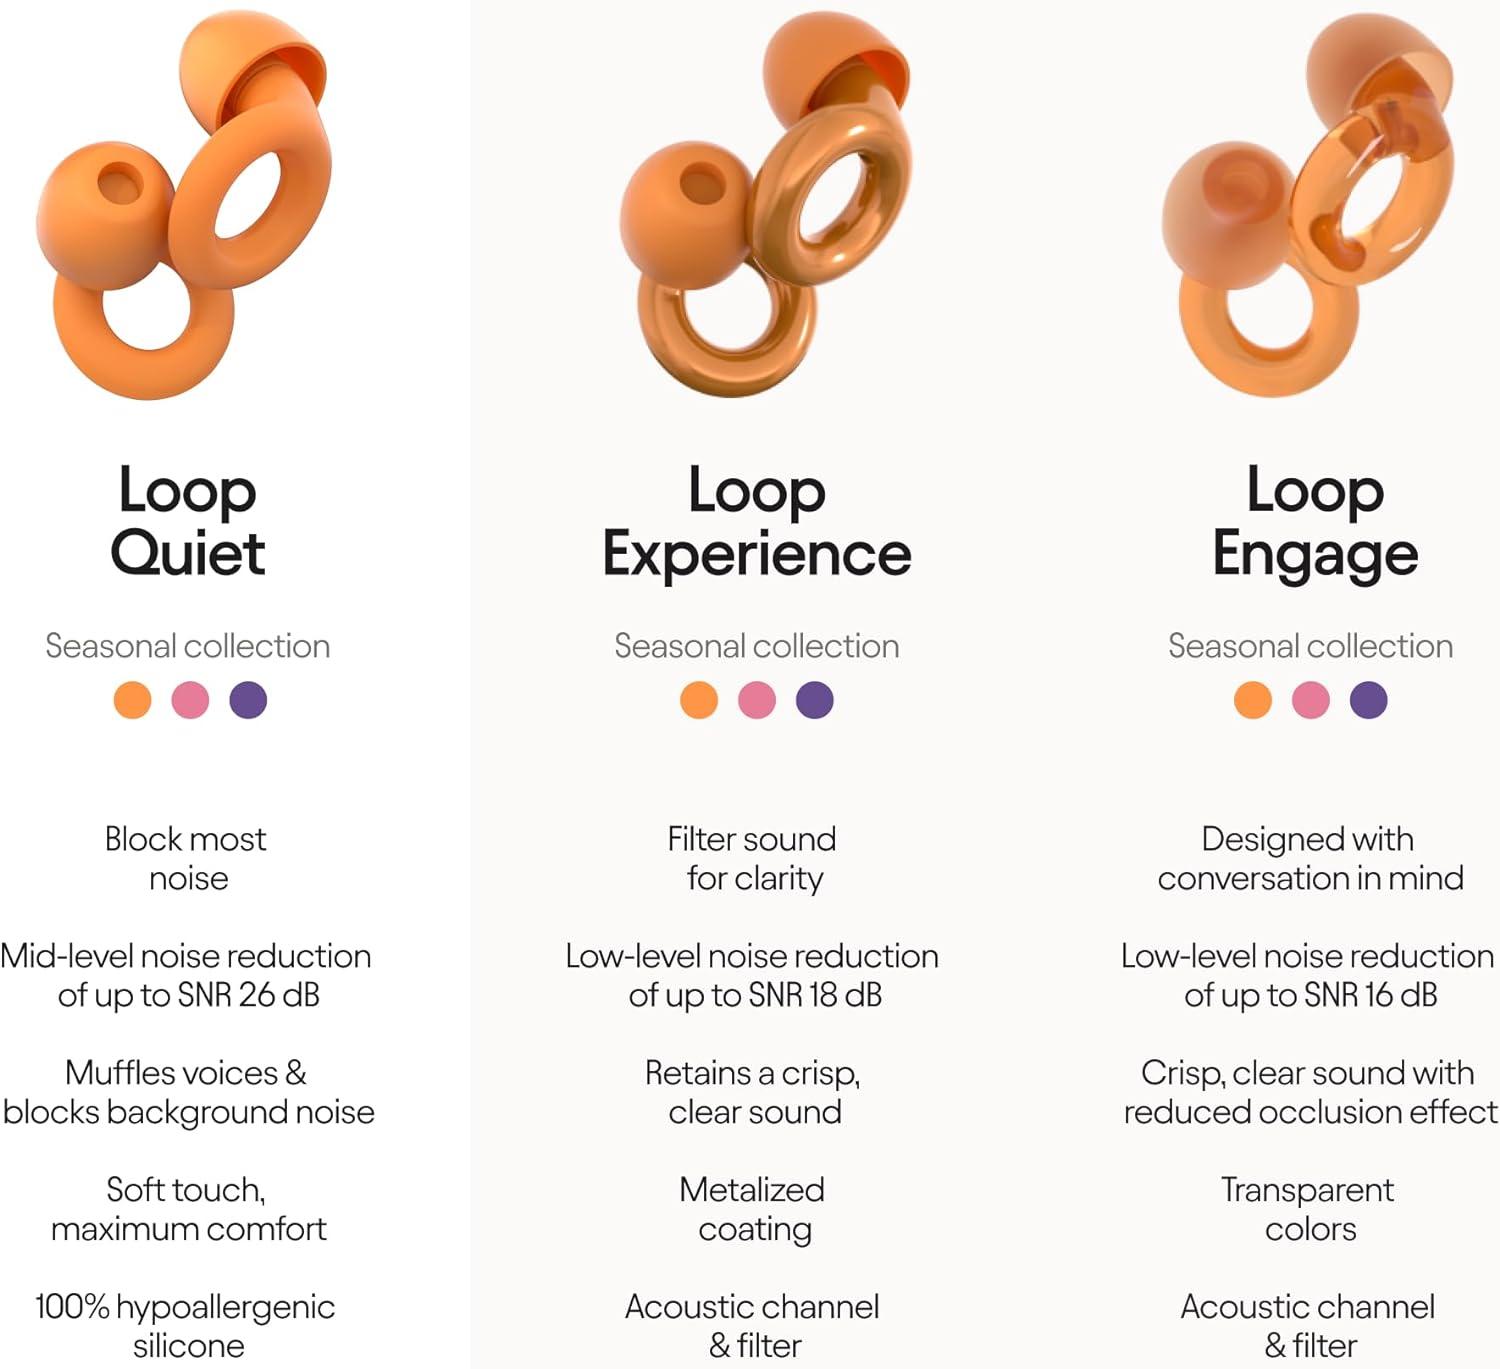 Loop Engage: 16 dB Clarity in Conversations – Loop Earplugs